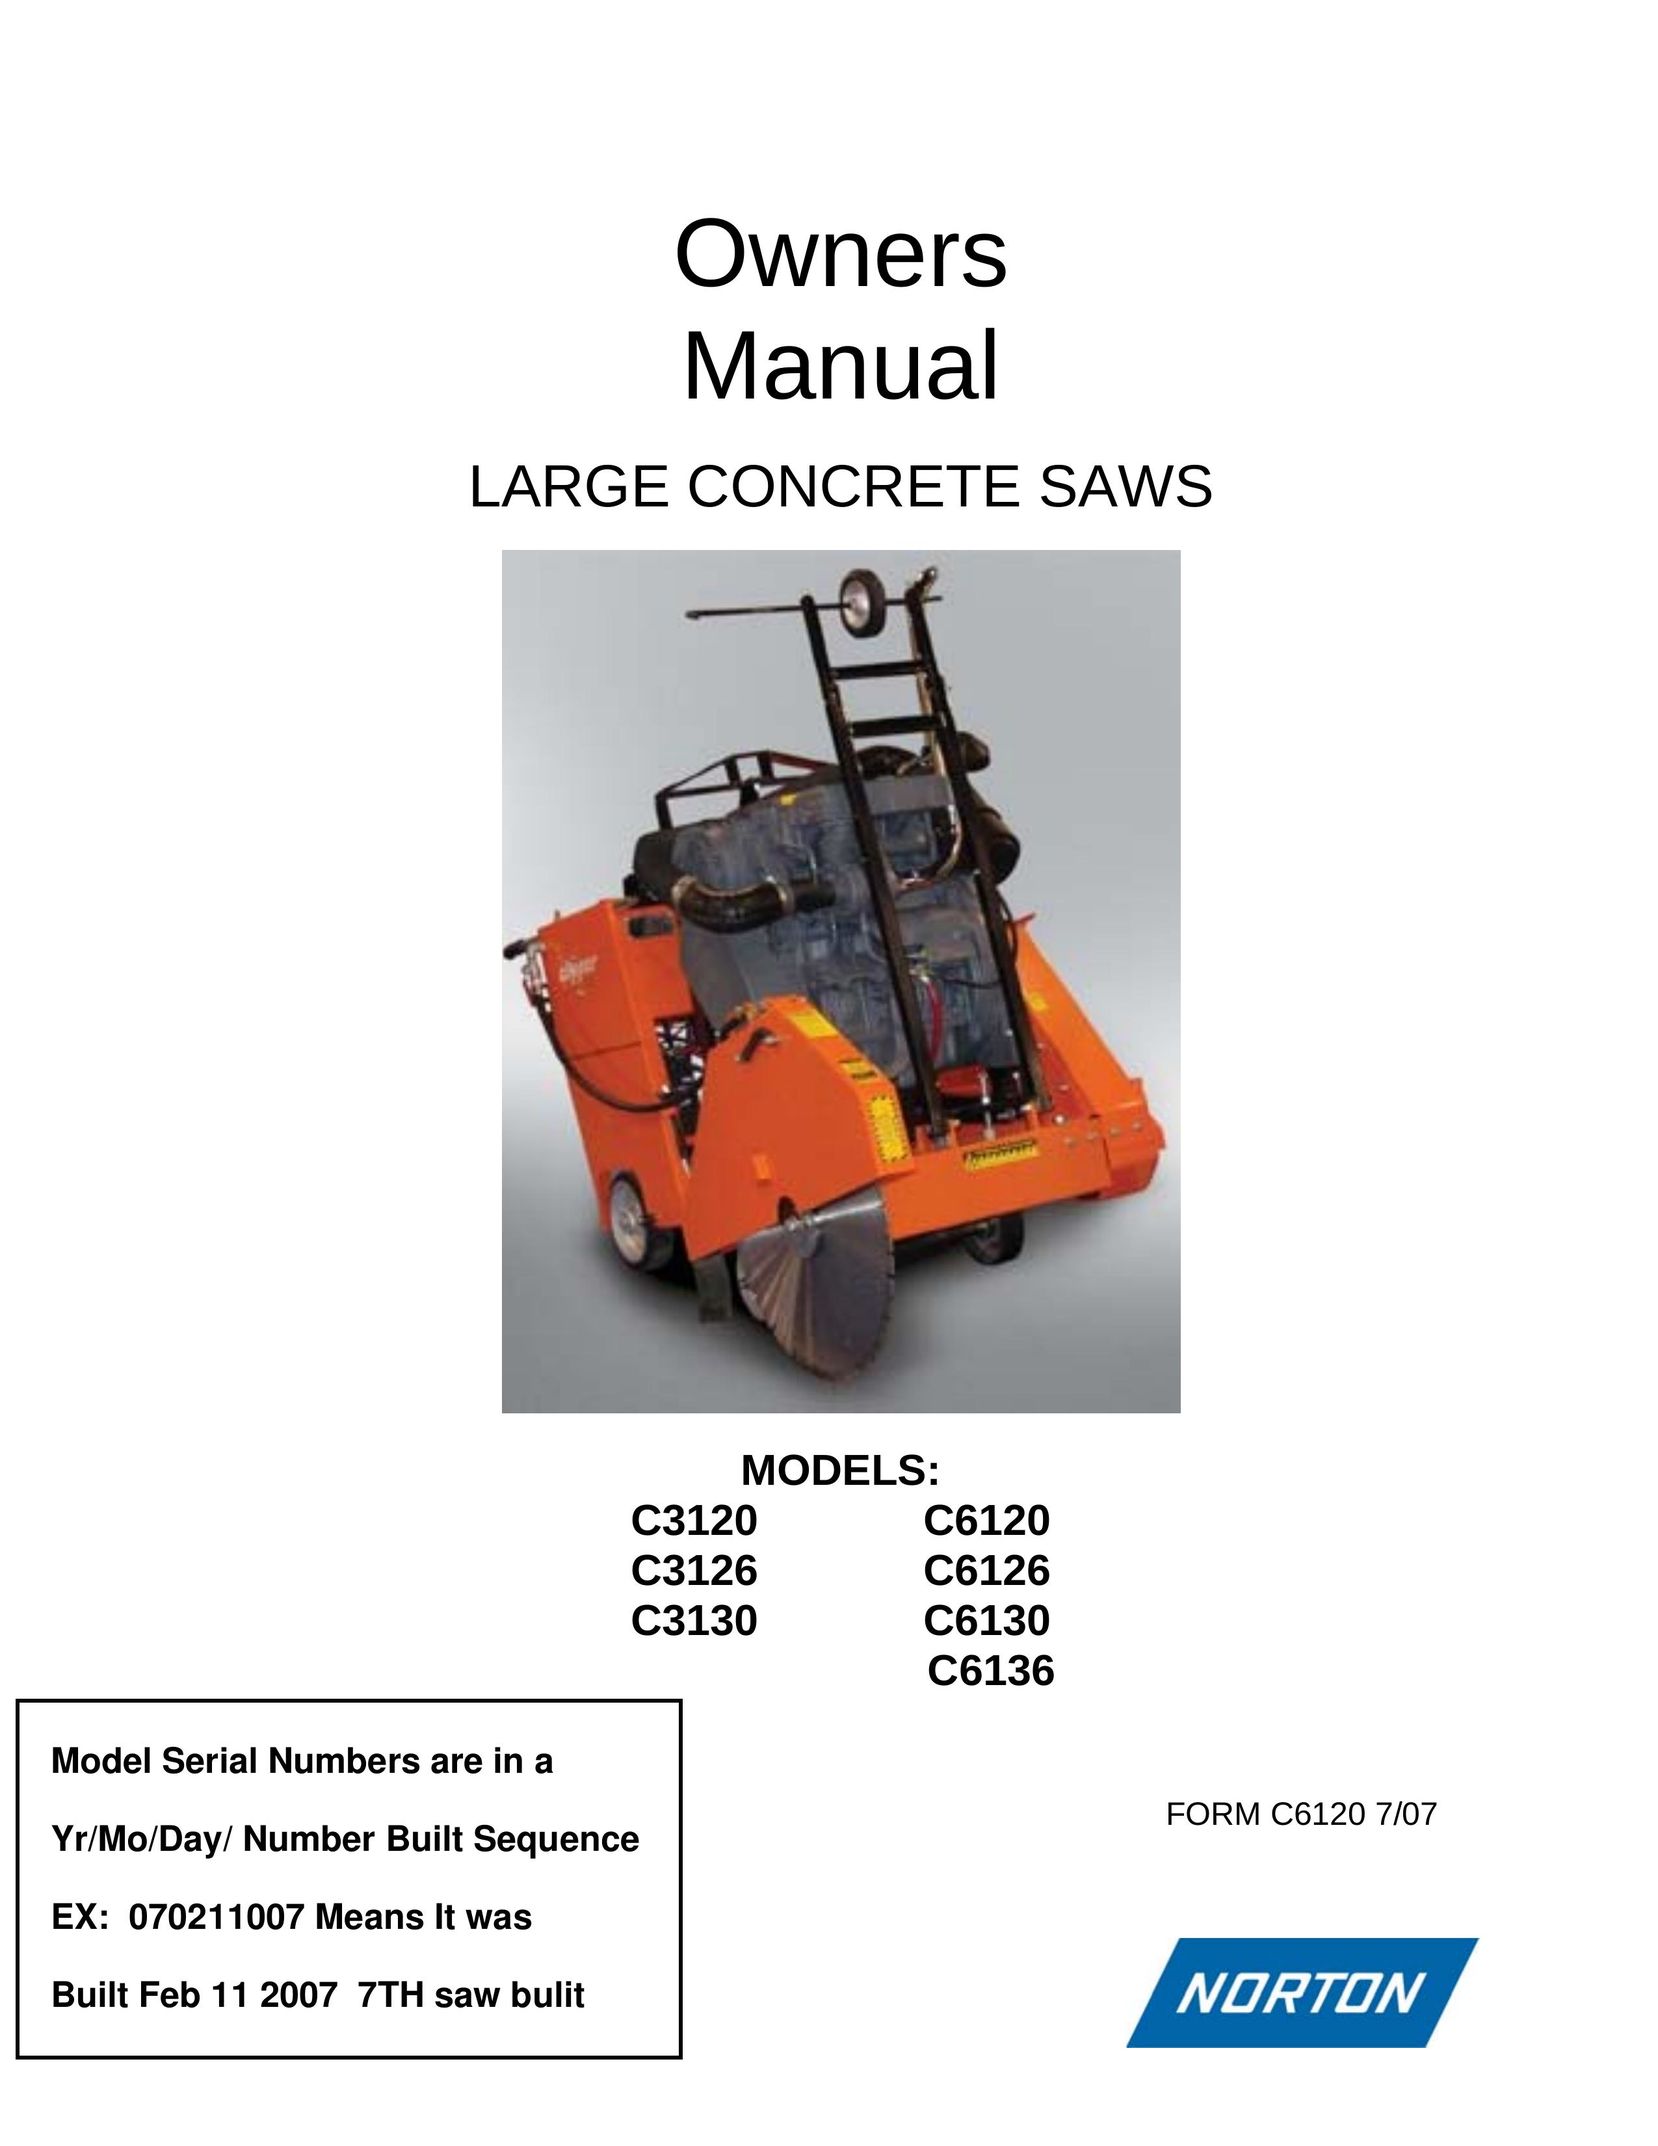 Norton Abrasives C3130 Saw User Manual